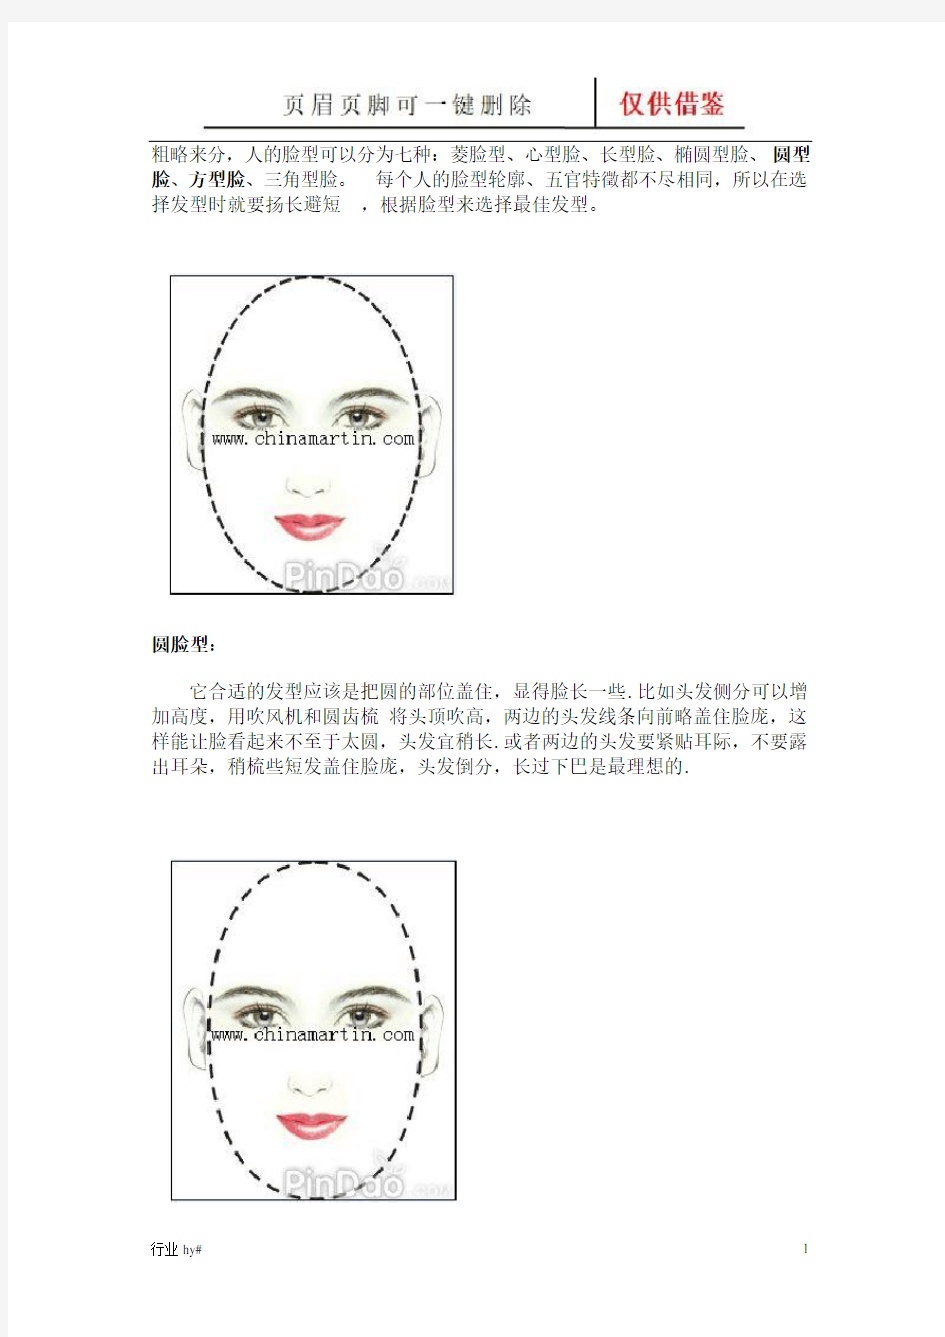 各种脸型的发型设计(谷风文书)